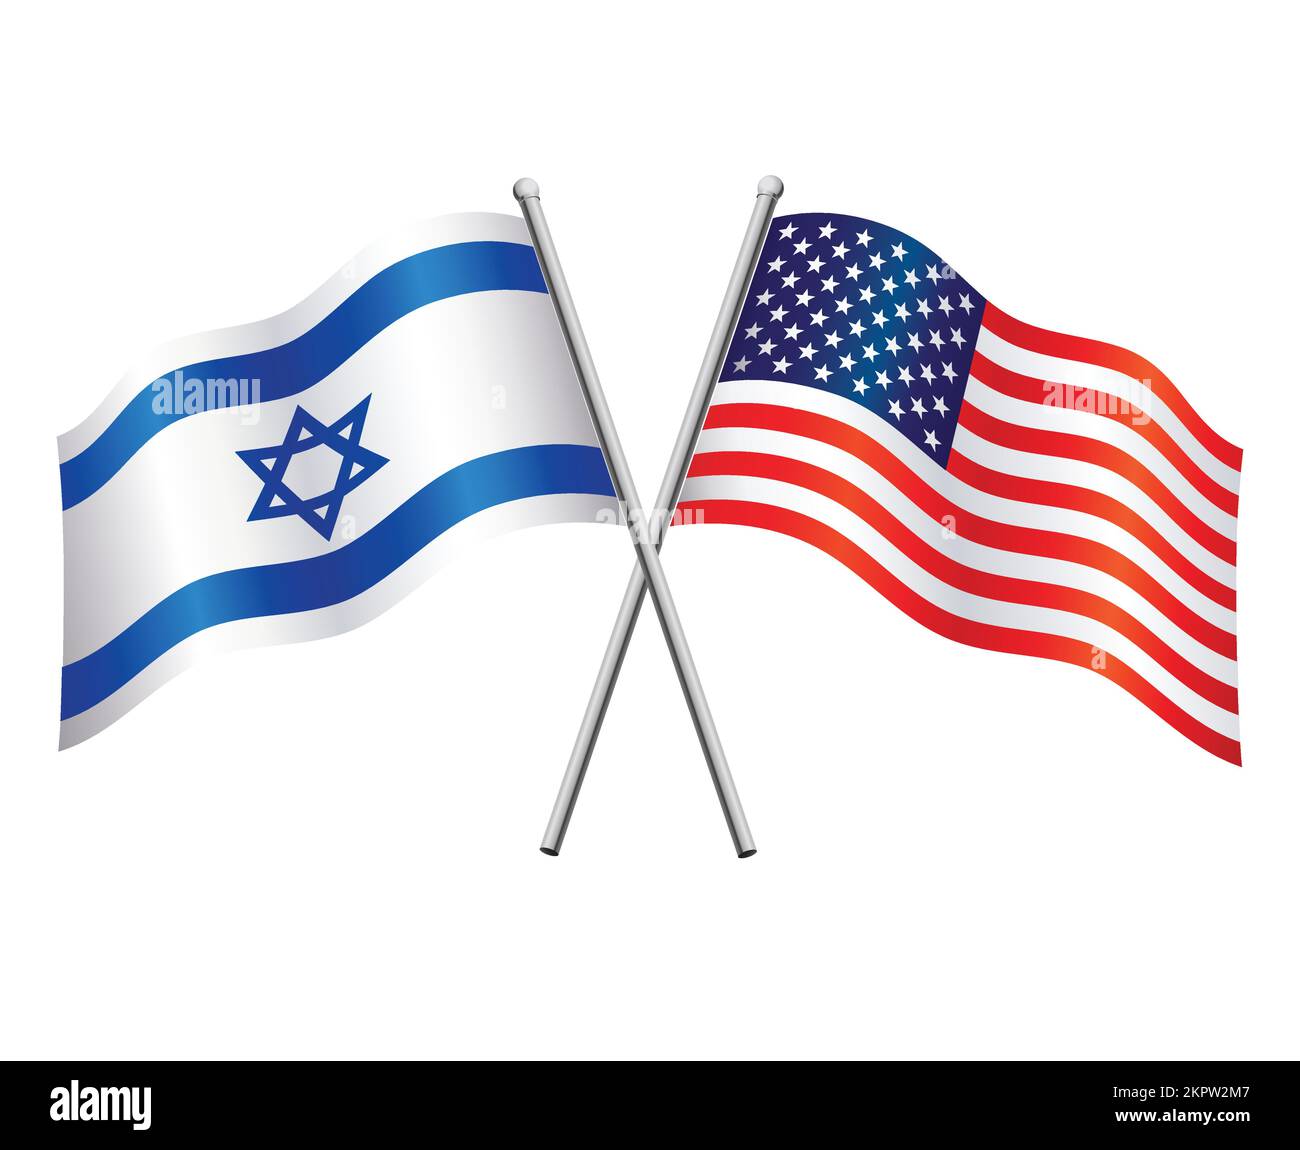 die israelischen und amerikanischen Flaggen im Beziehungsbündnis oder gegen den Konflikt überquerten die Flaggenmasten, isoliert auf weißem Hintergrund Stock Vektor